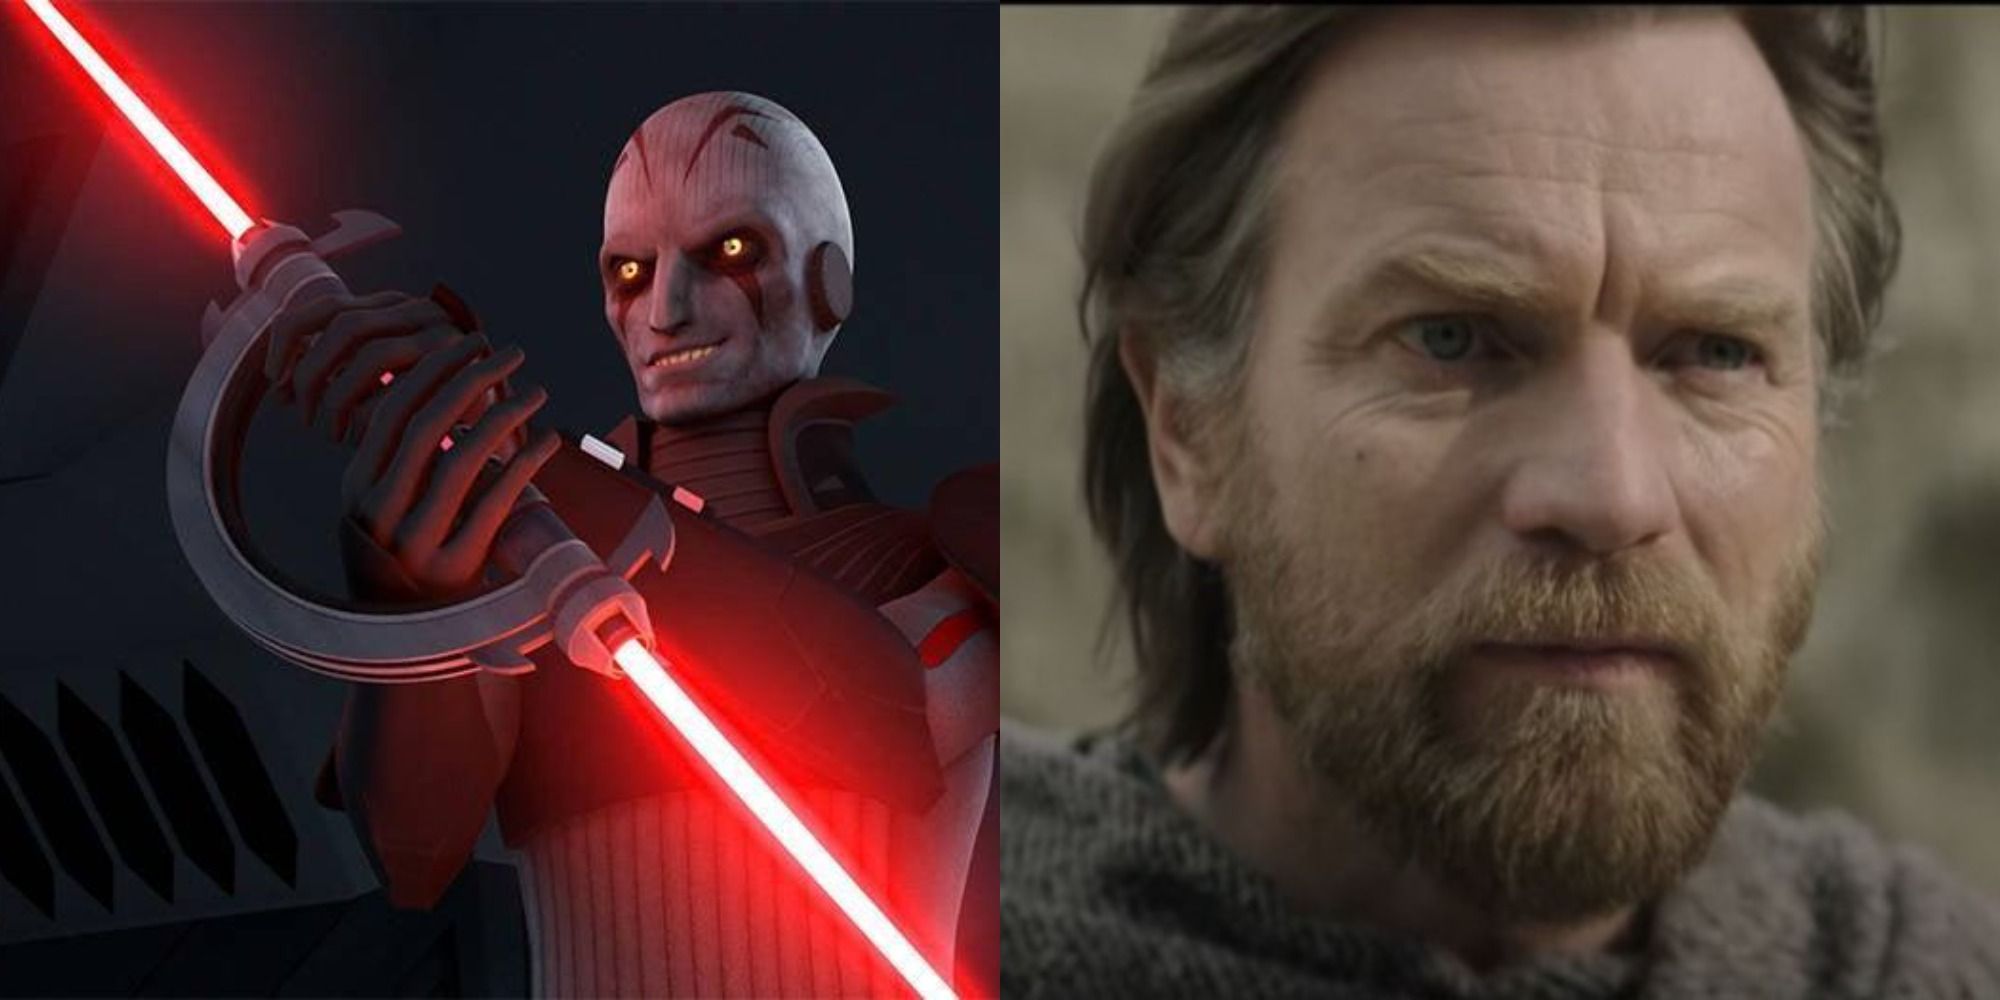 Split image of Grand Inquisitor in Star Wars Rebels and Obi-Wan in Kenobi